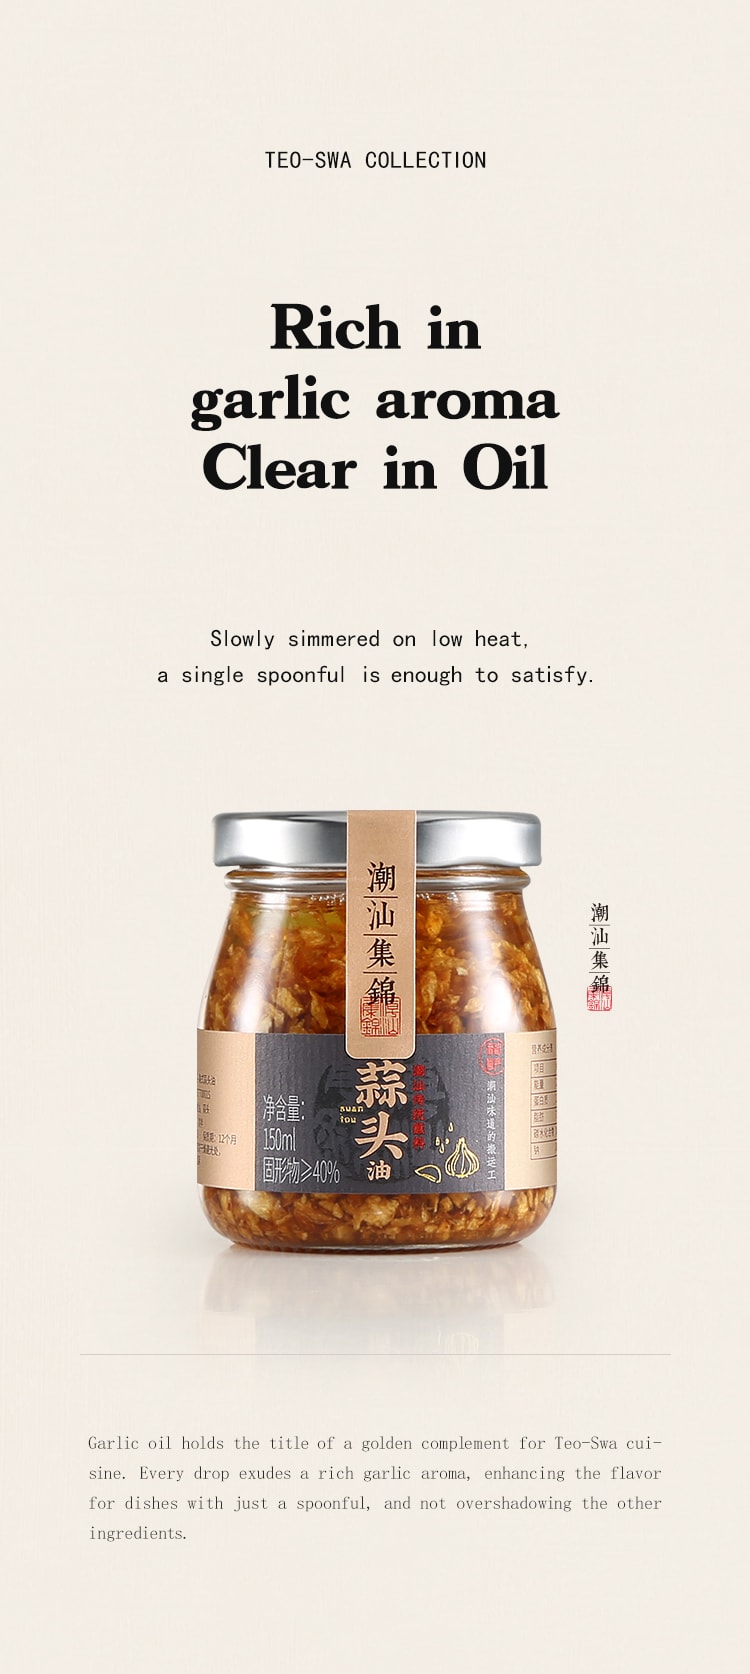 中国潮汕集锦 3件套装 蒜头油 葱油 蒜头酥 375克